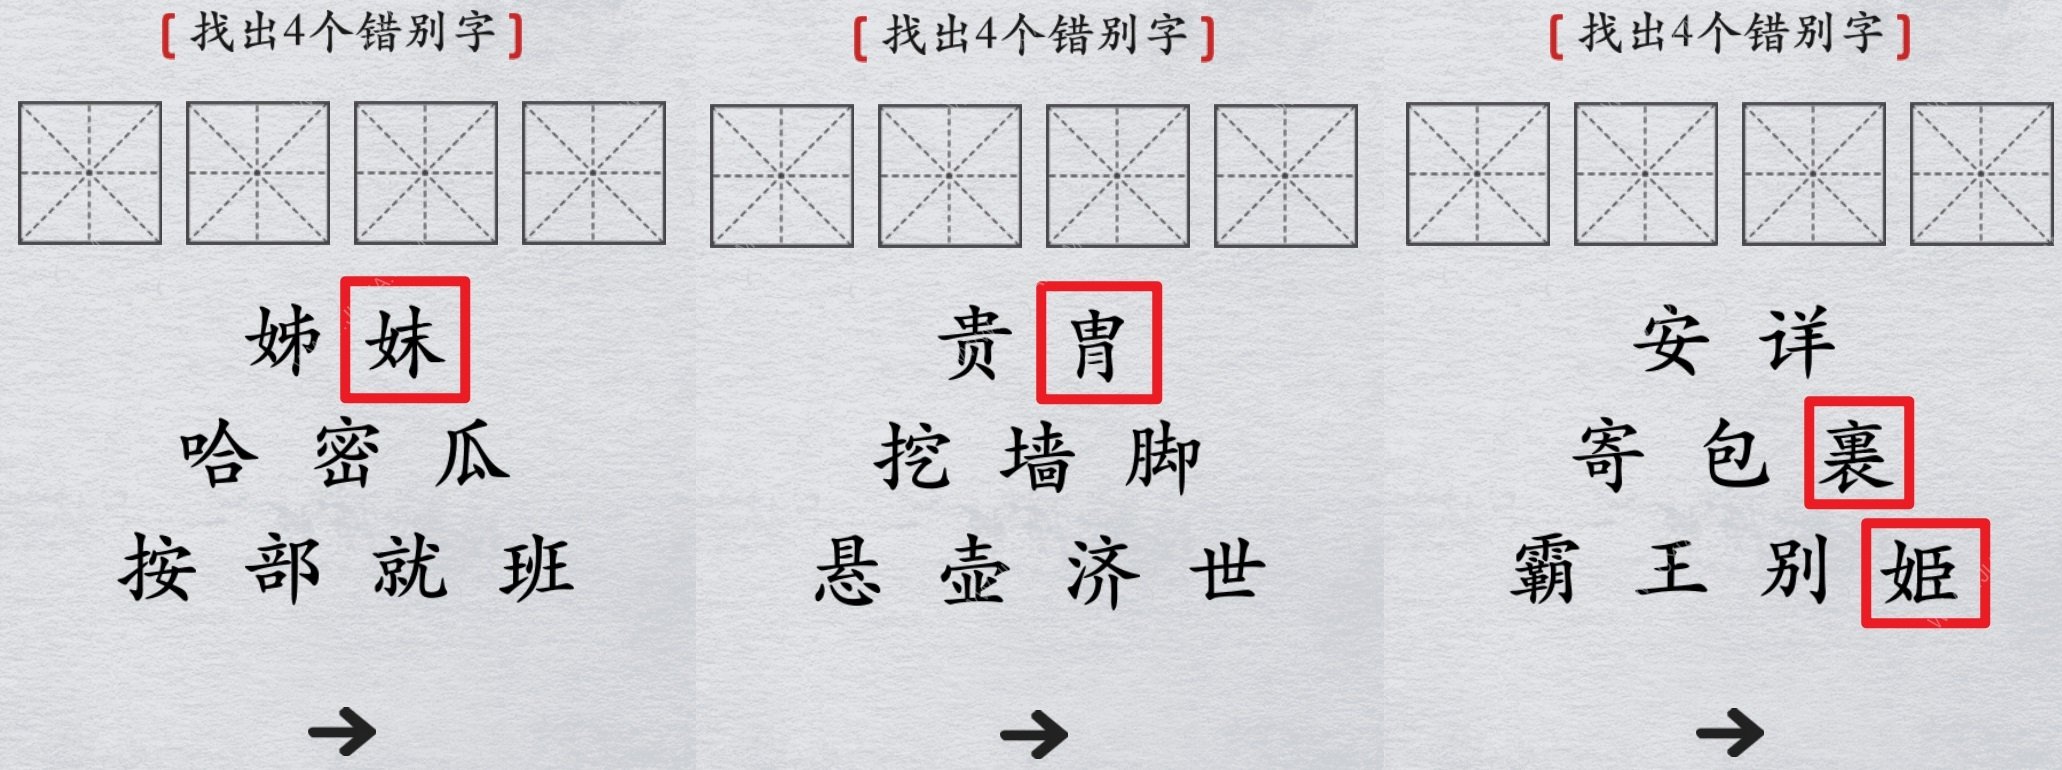 离谱的汉字找出错别字攻略 四个错别字在哪